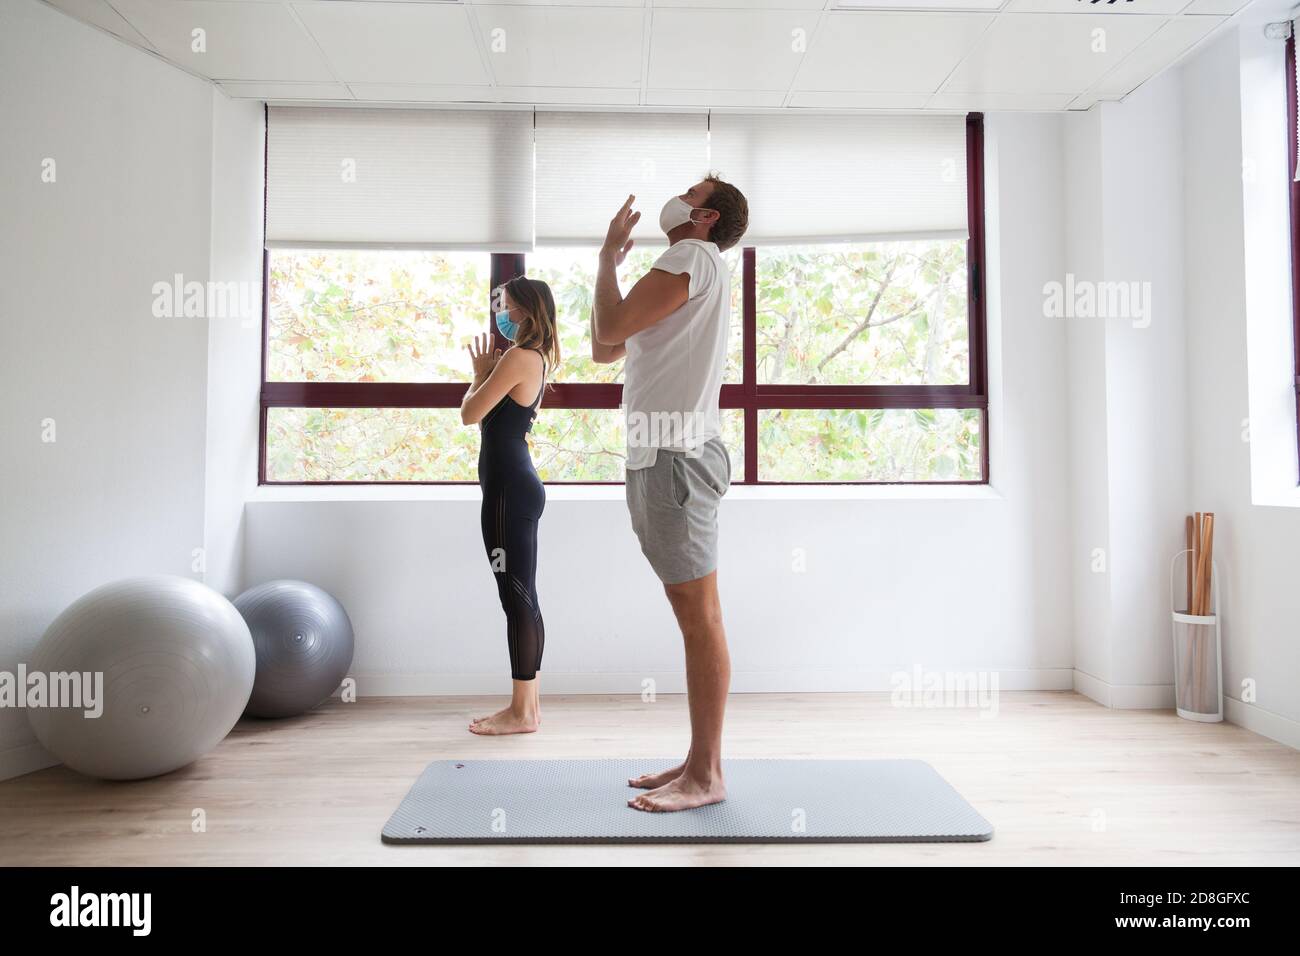 Yogi débutant et son entraîneur pratiquant le yoga portant un masque de protection Banque D'Images